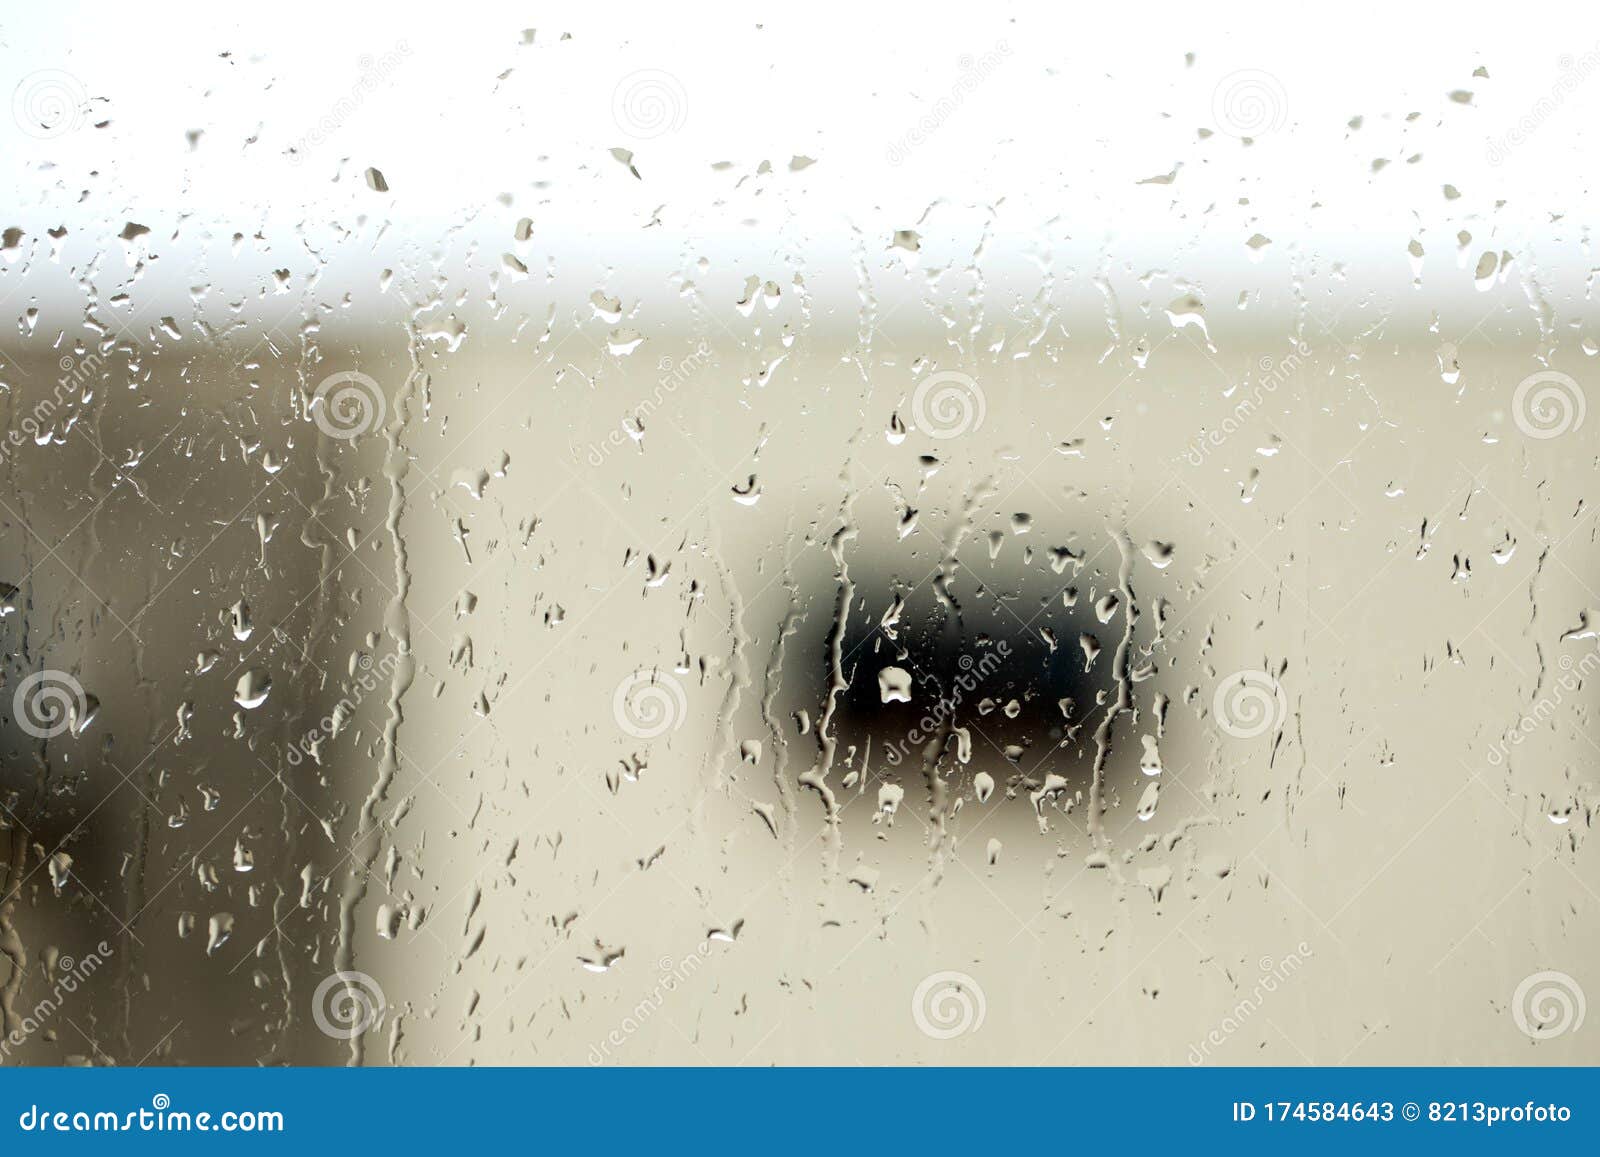 雨背景 窗上雨滴 秋季背景 抽象质感的壁纸库存图片 图片包括有雨背景 窗上雨滴 秋季背景 抽象质感的壁纸